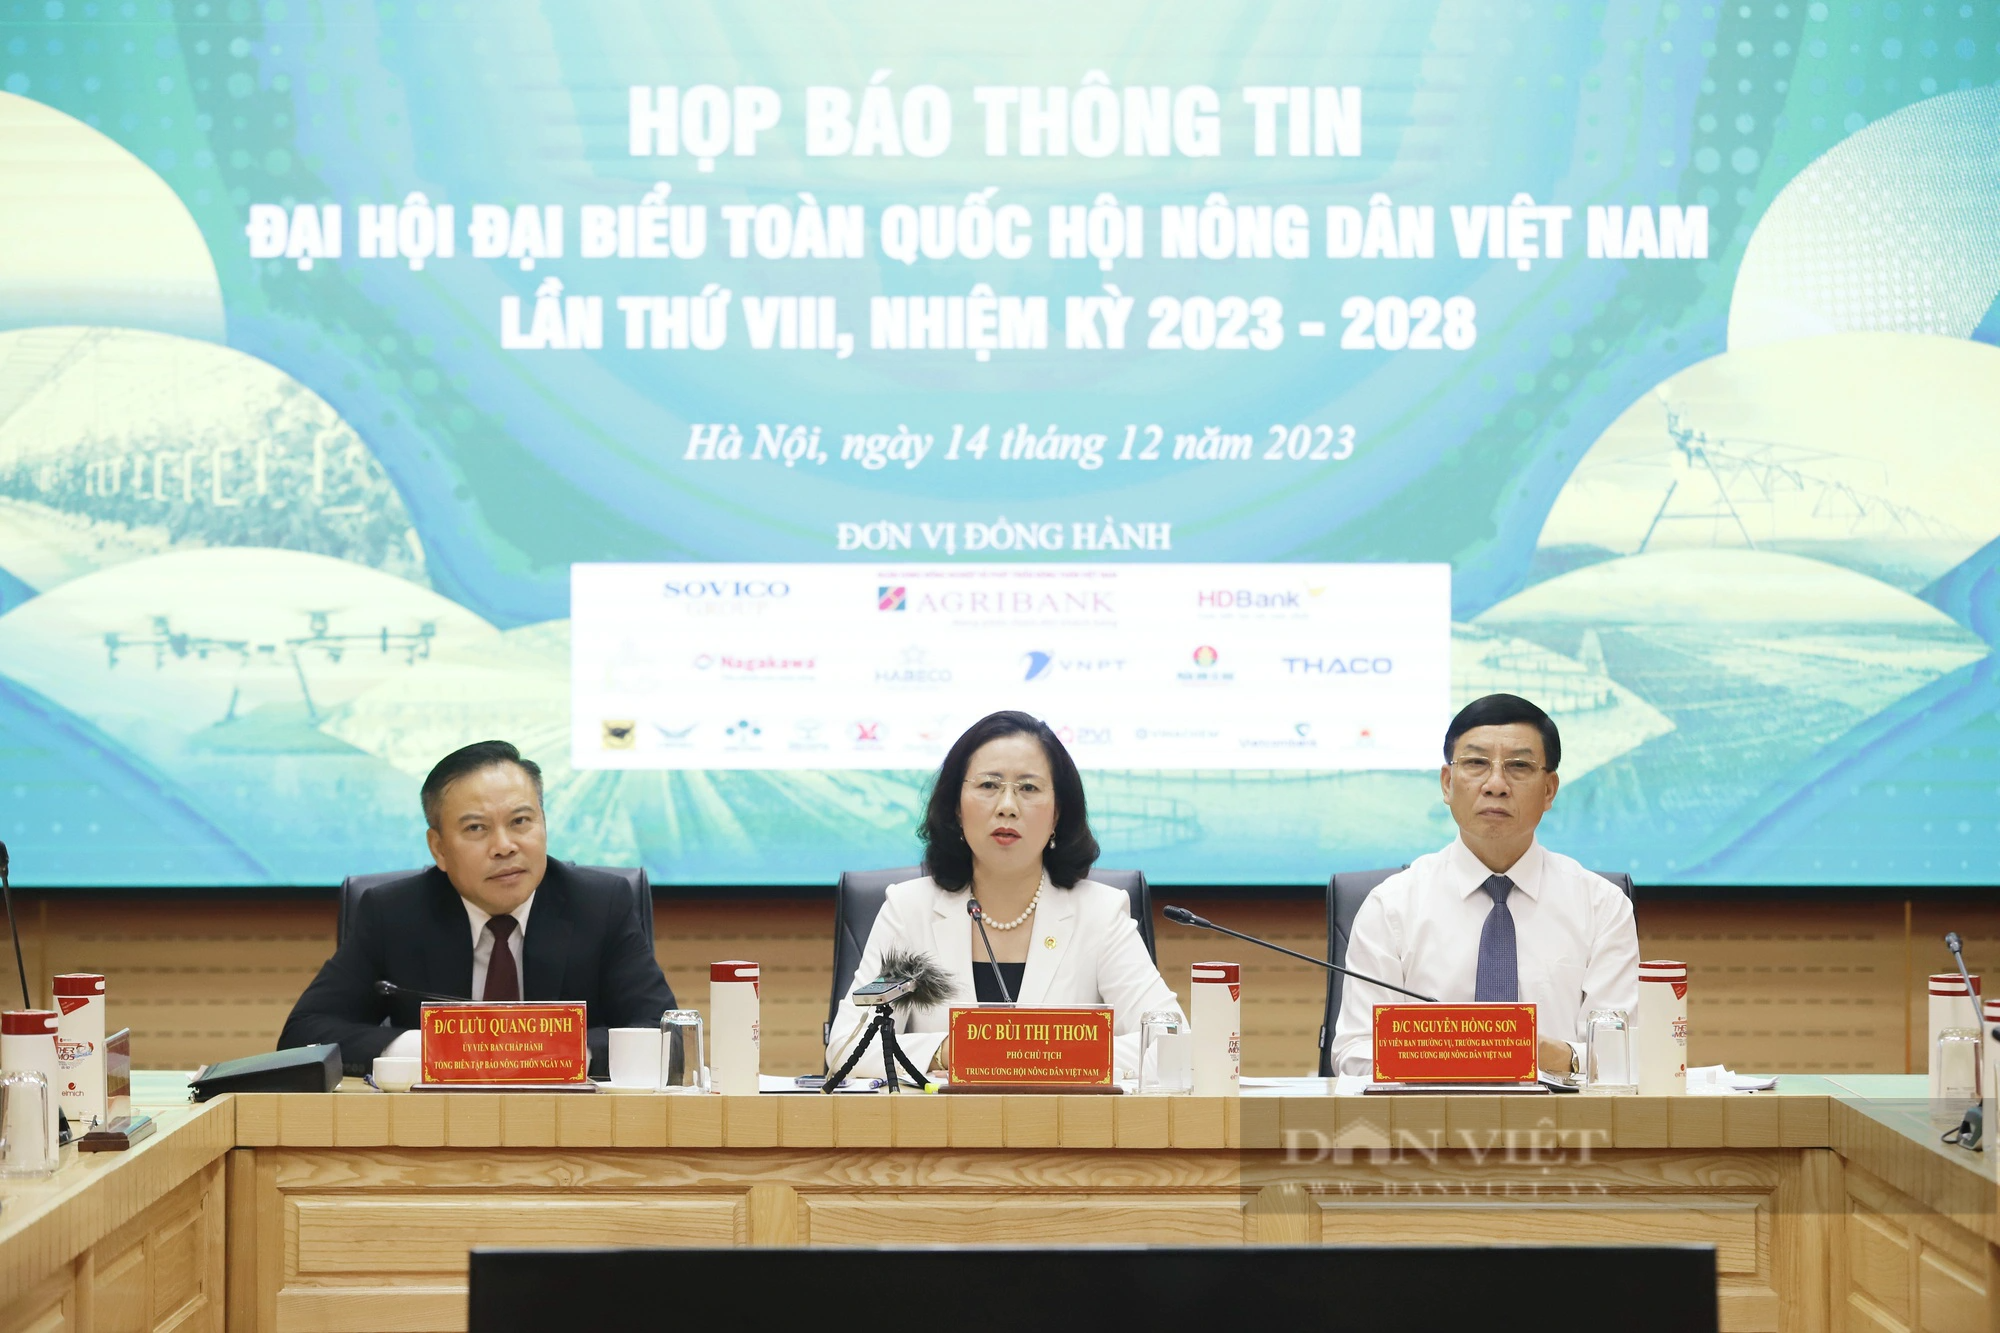 Hình ảnh Họp báo thông tin Đại hội đại biểu toàn quốc Hội Nông dân Việt Nam lần thứ VIII - Ảnh 2.